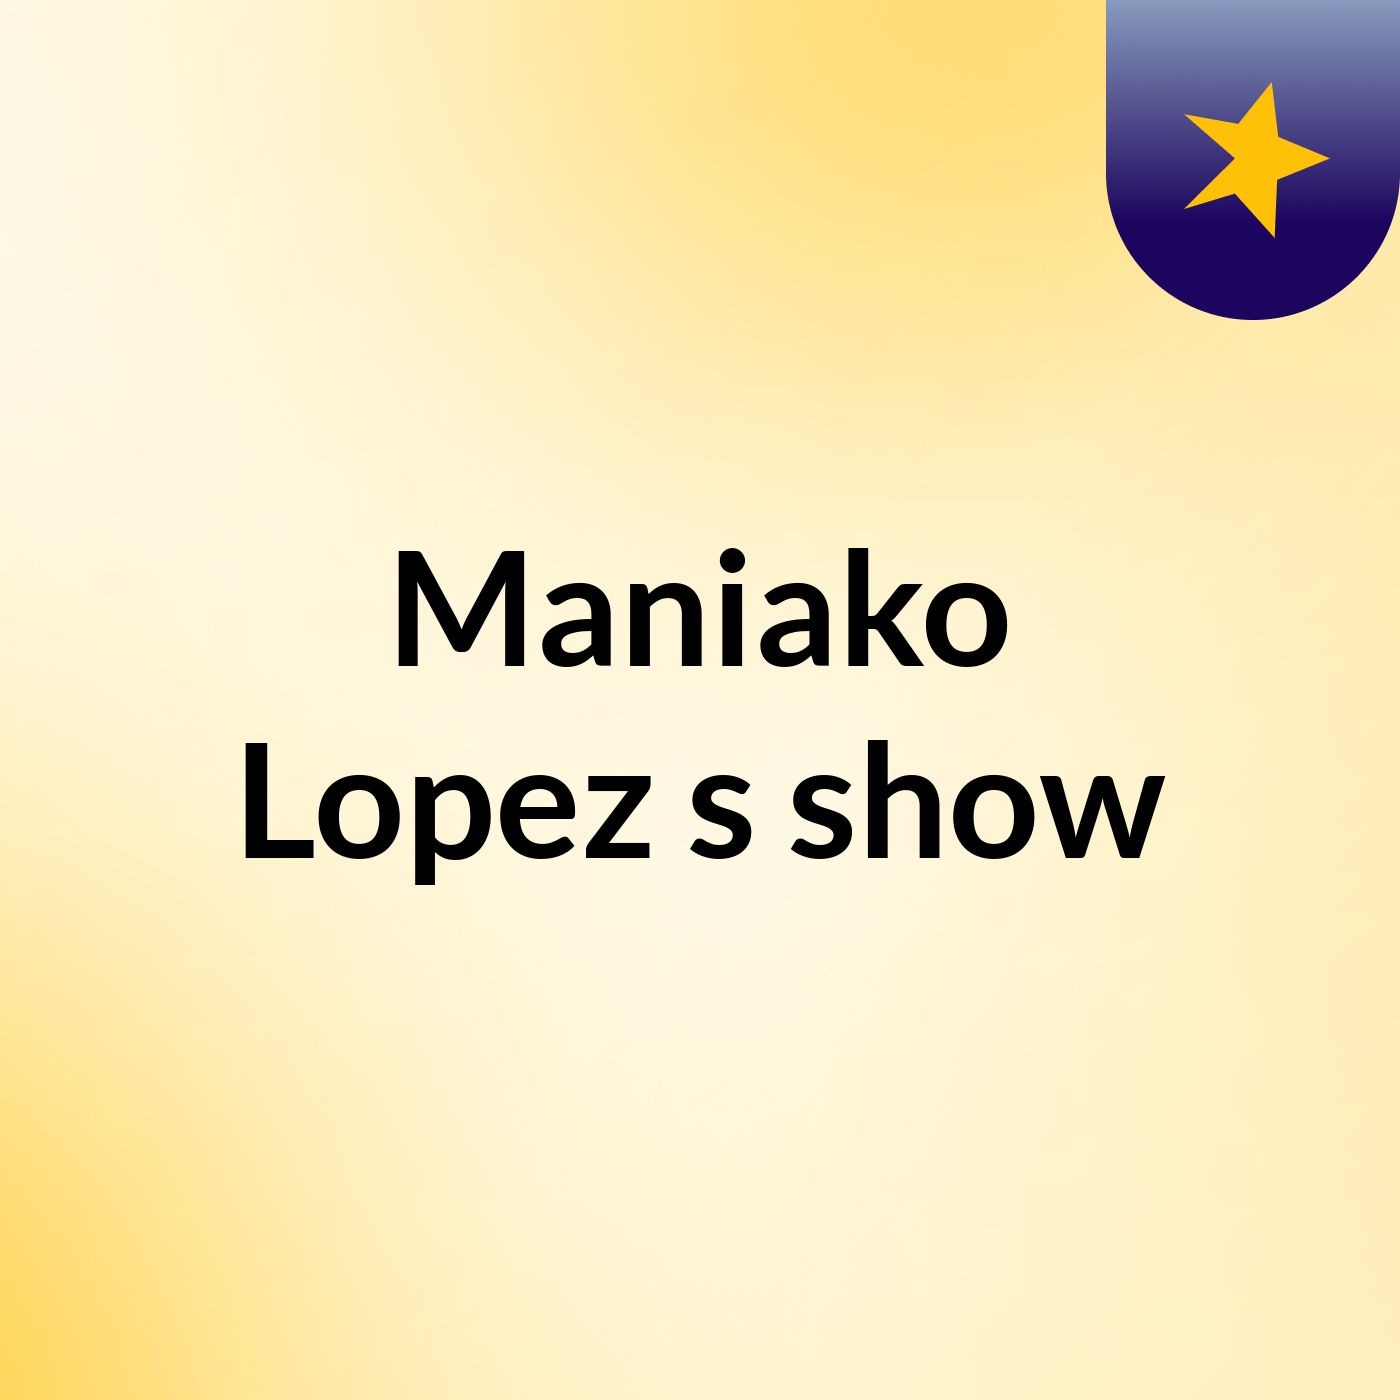 Maniako Lopez's show